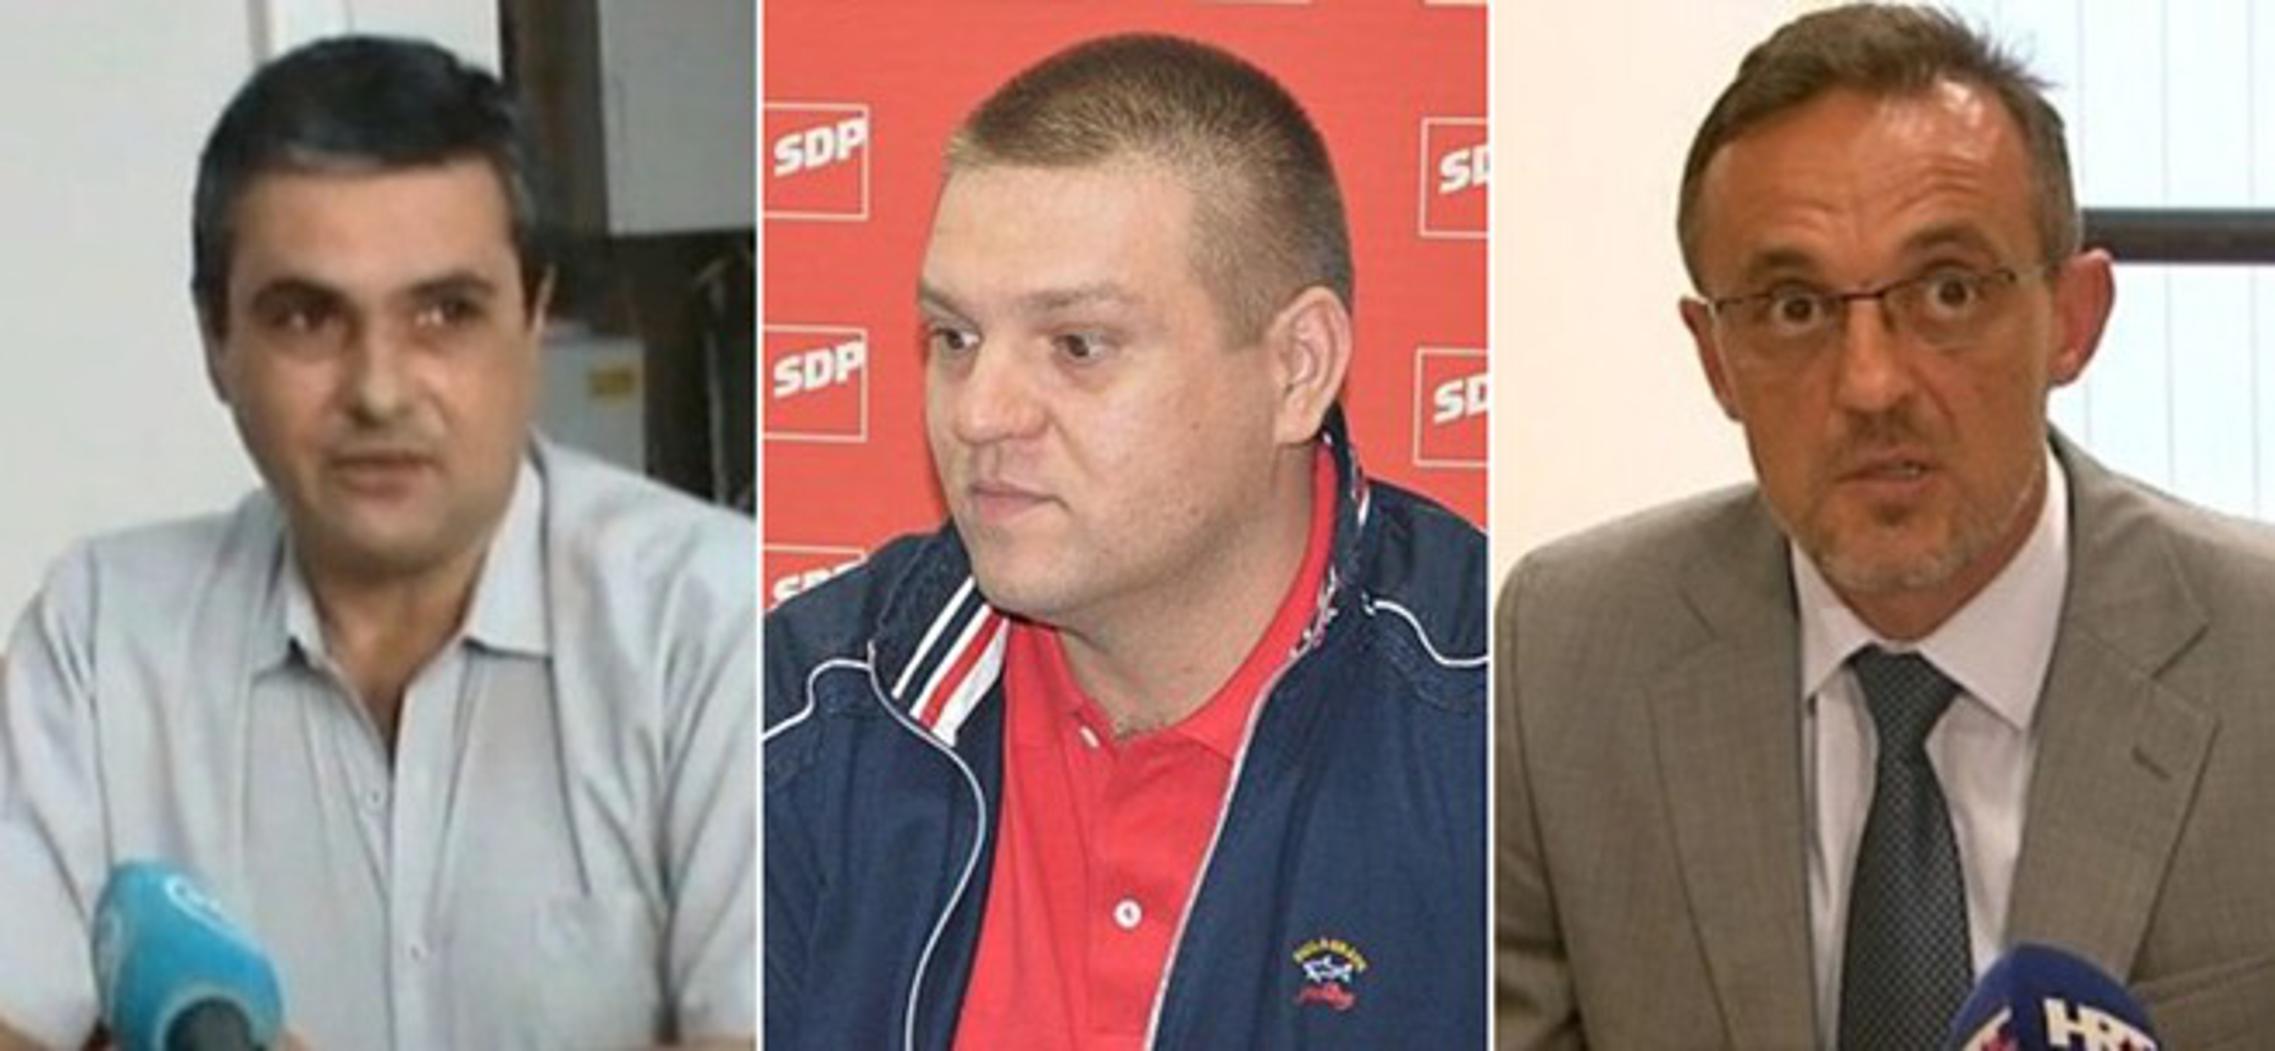 Tihomir Biščević, Tomislav Opačak, Tihomir Jakovina